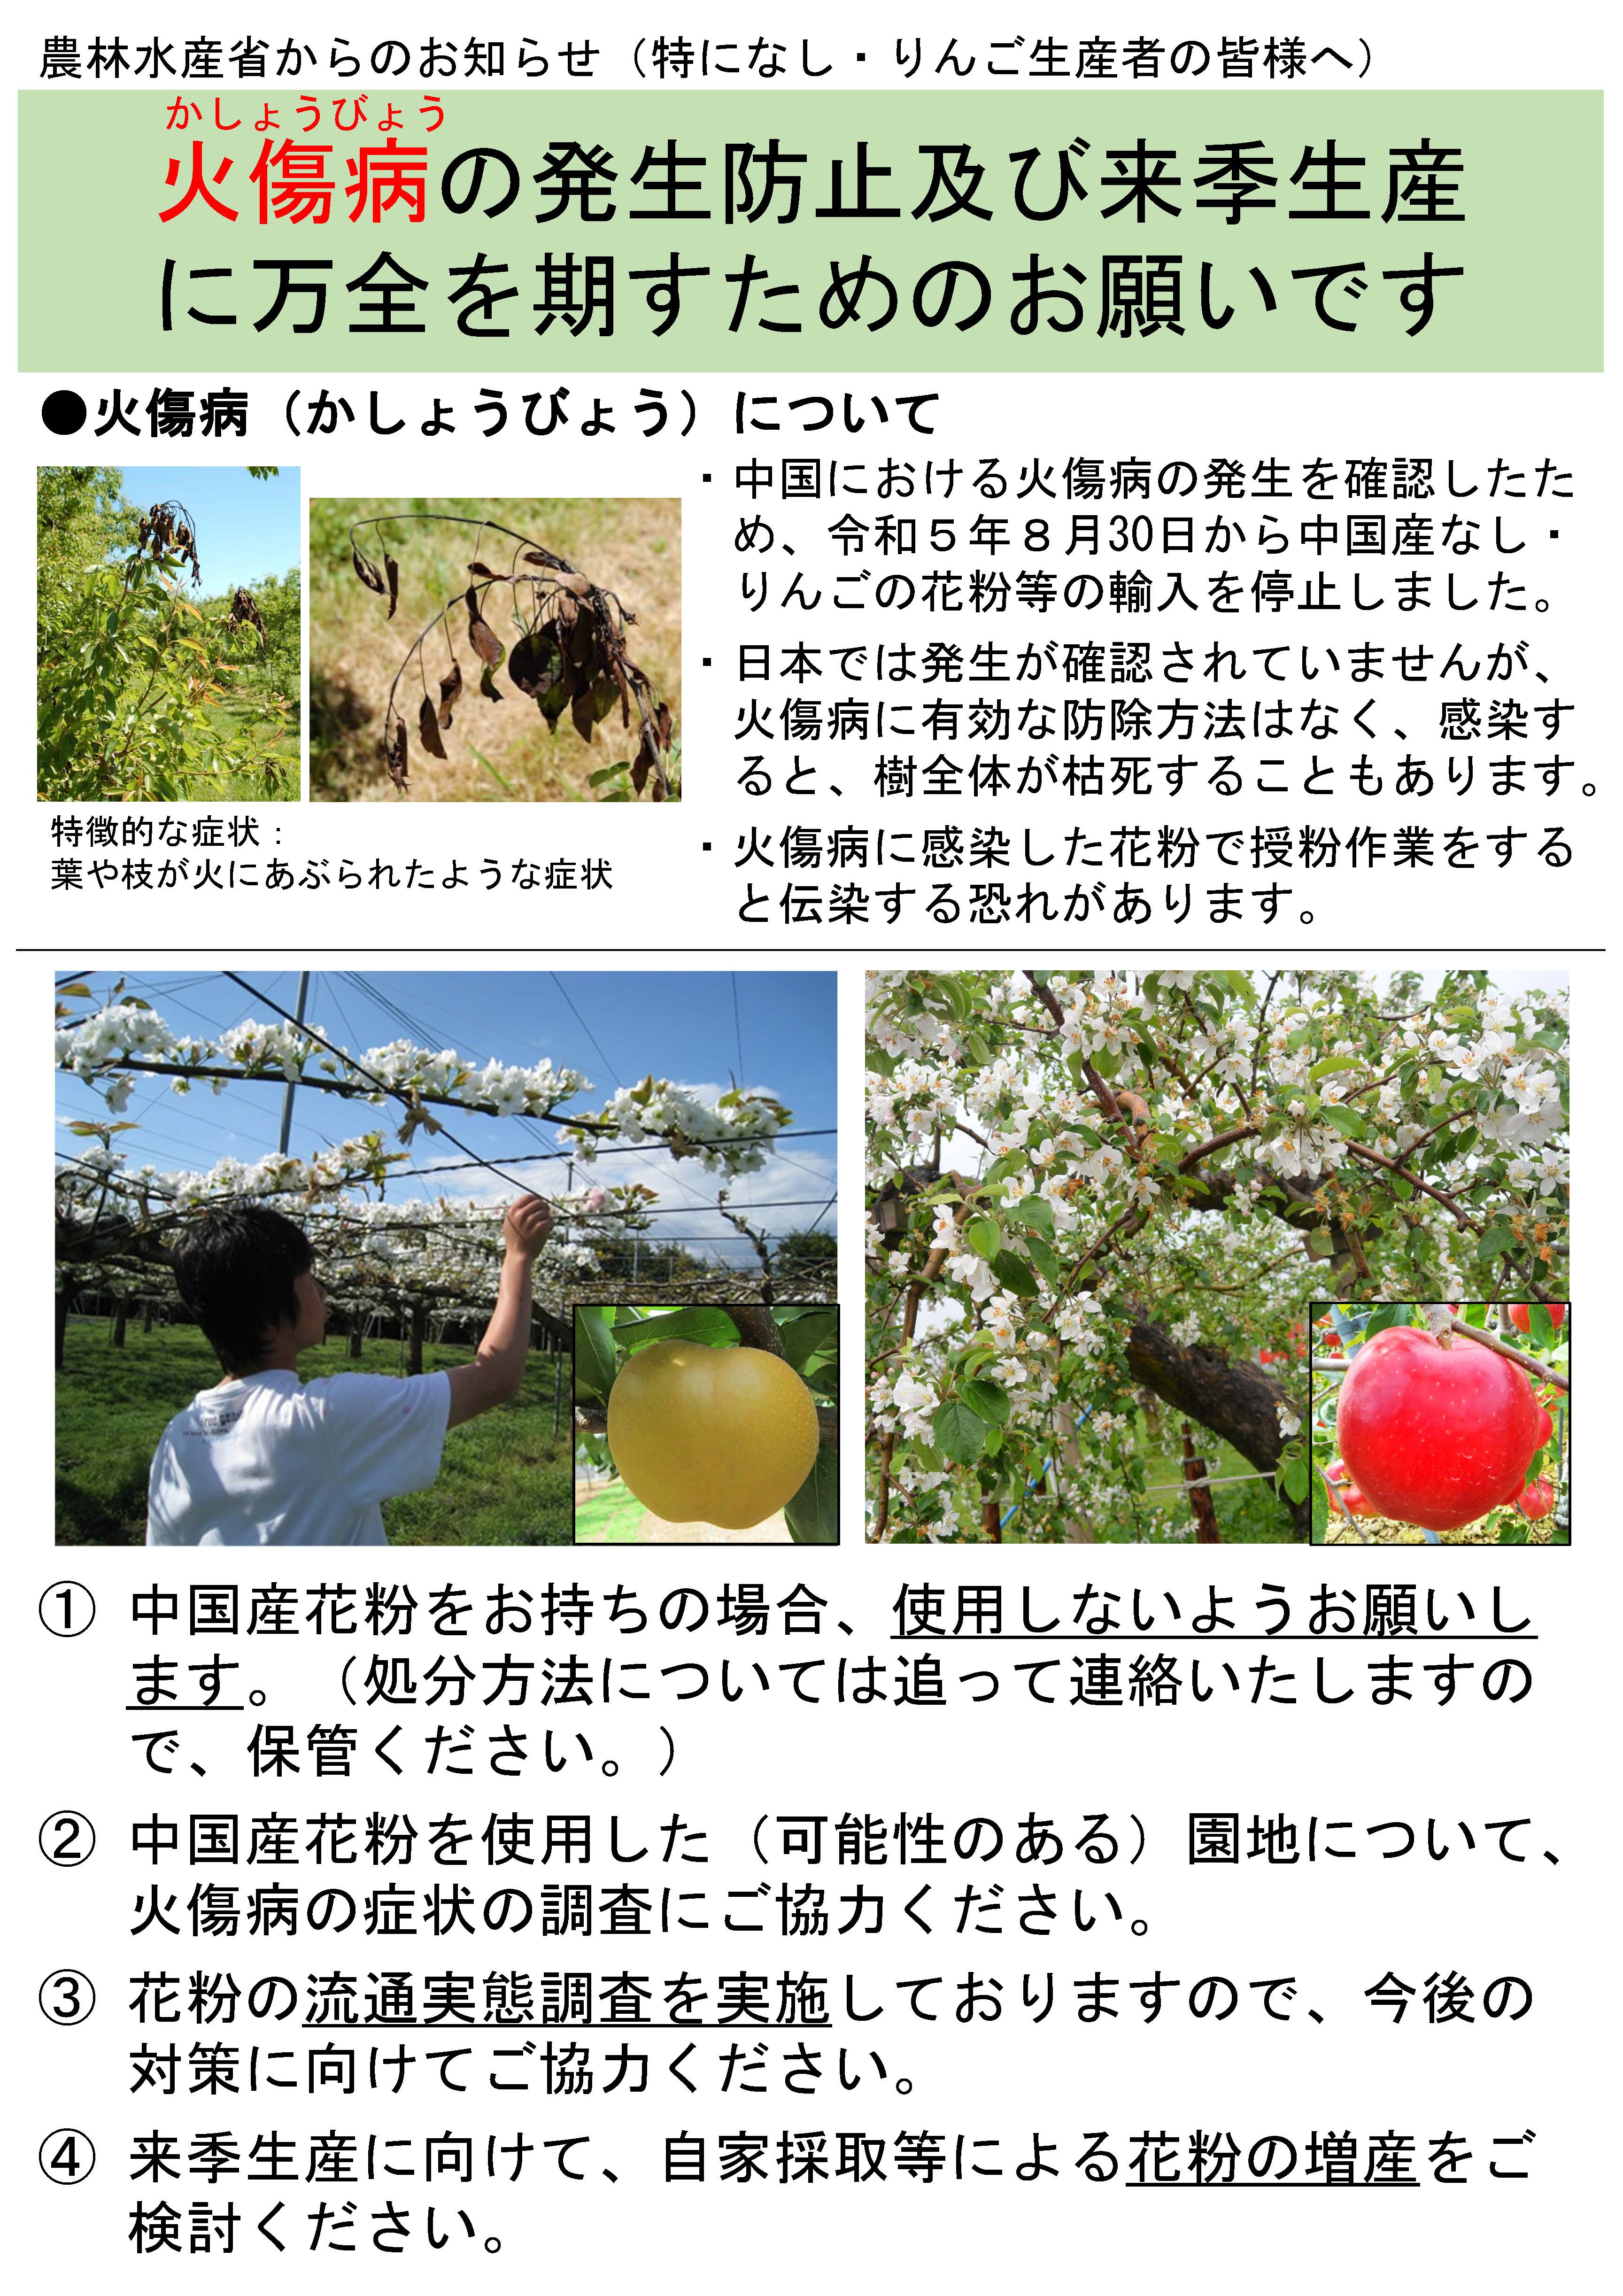 【なし・りんご生産者の皆様へ】中国における火傷病発生に伴う対応